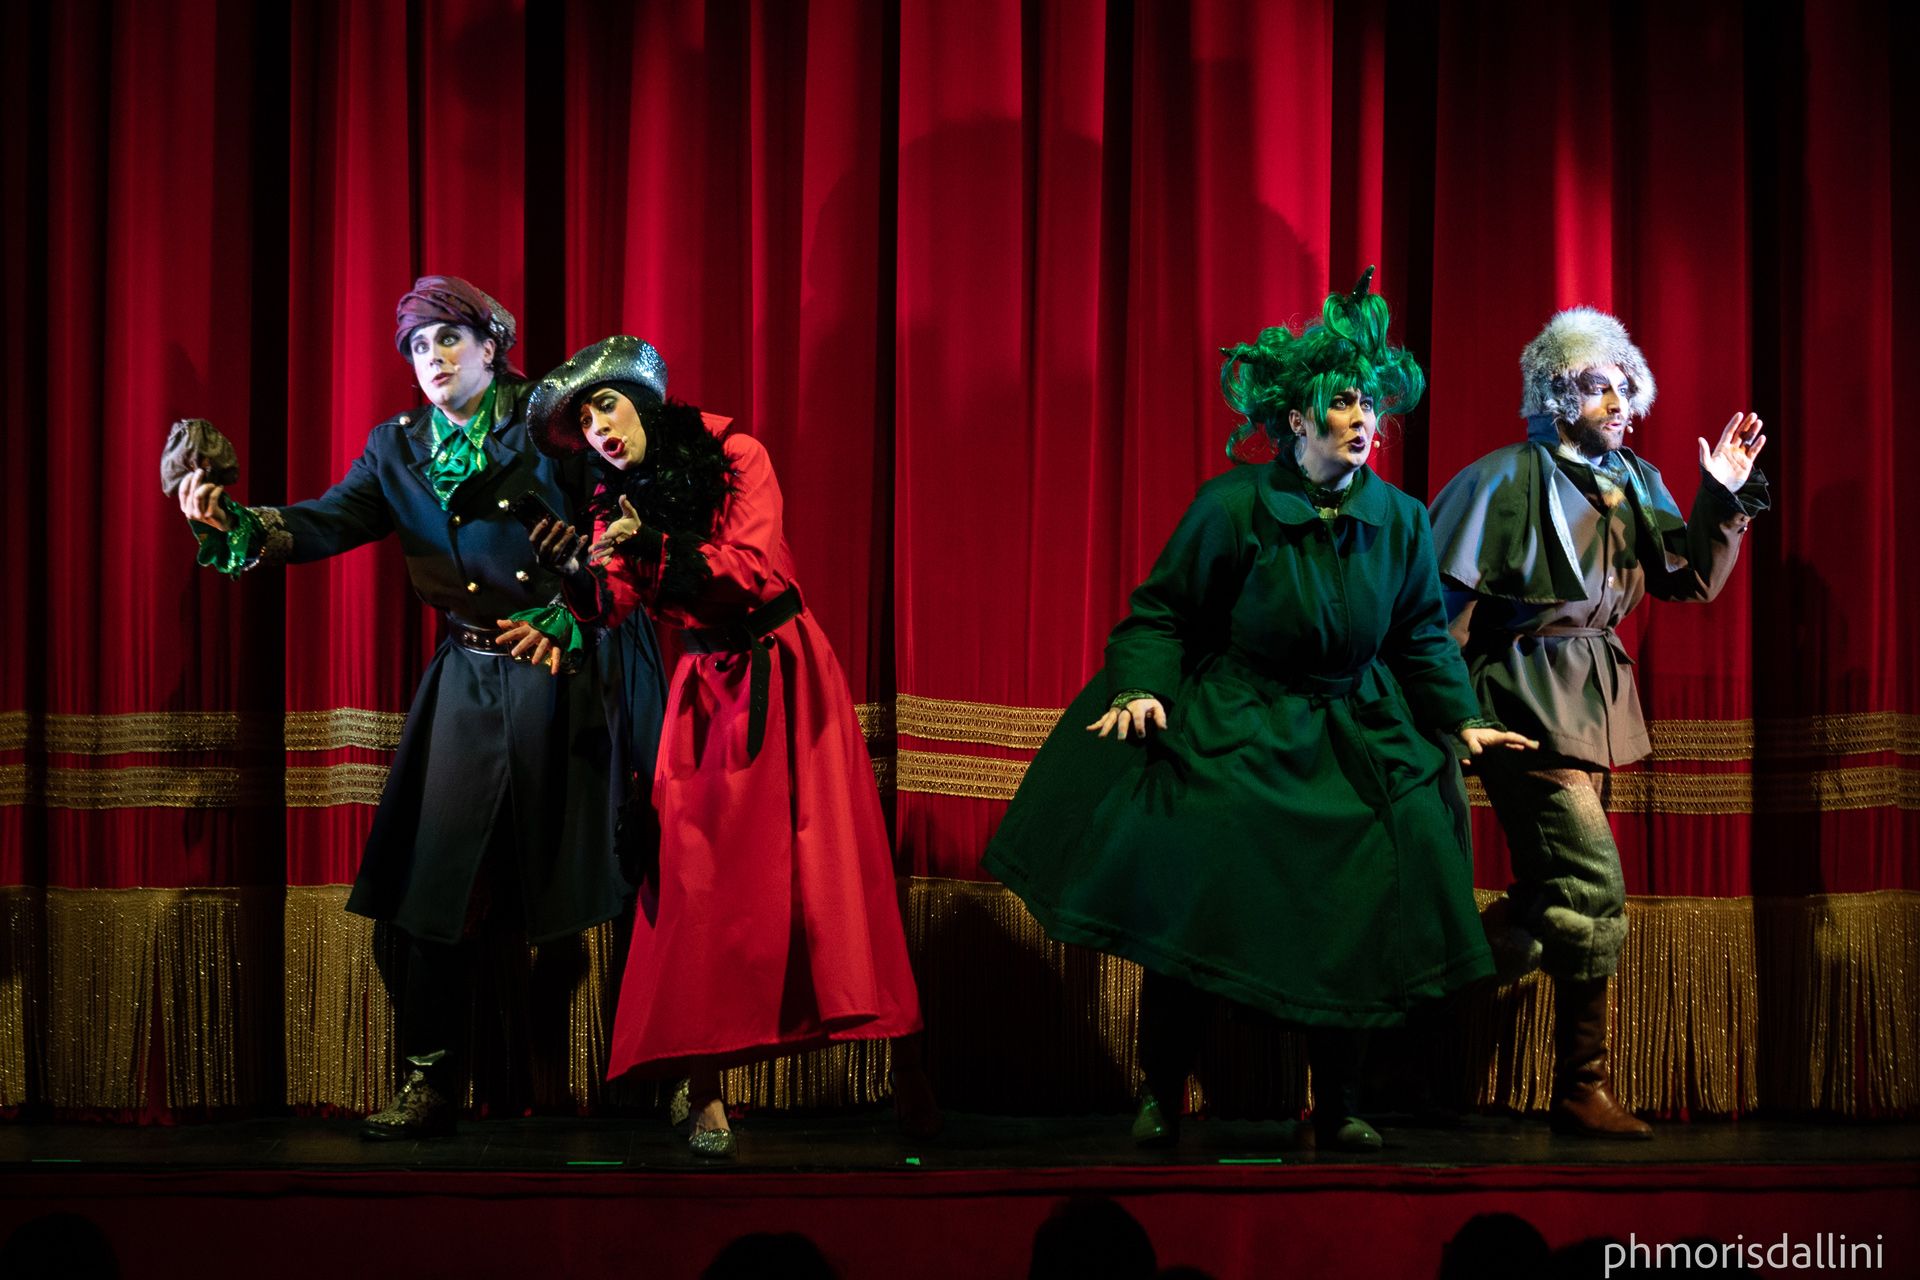 Teatro Verdi Gorizia Arriva Malefici, il musical per famiglie scritto da Dario Vergassola